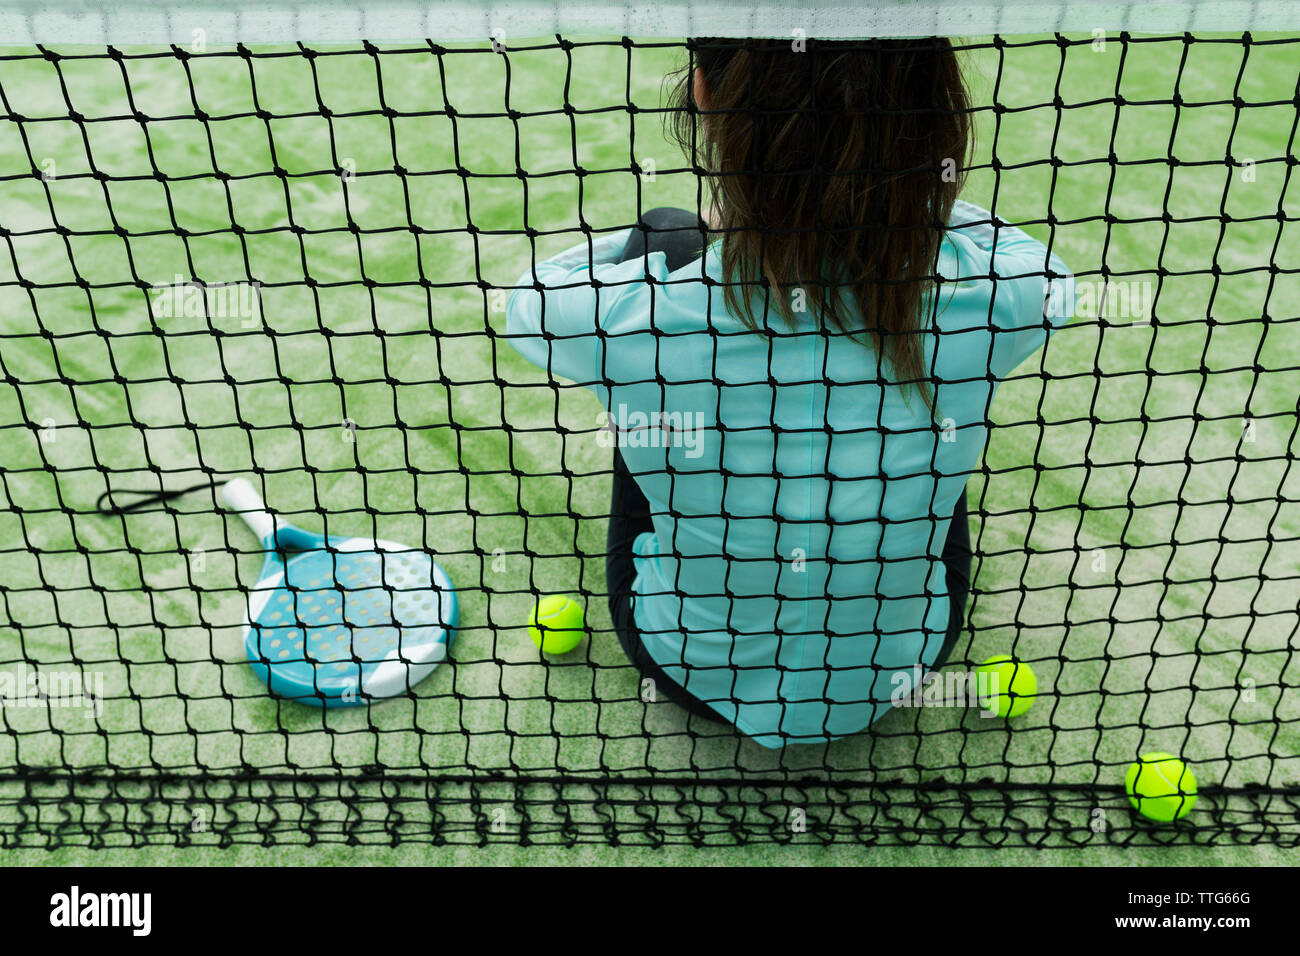 Vue arrière de femme assise sur un court de tennis par net Banque D'Images